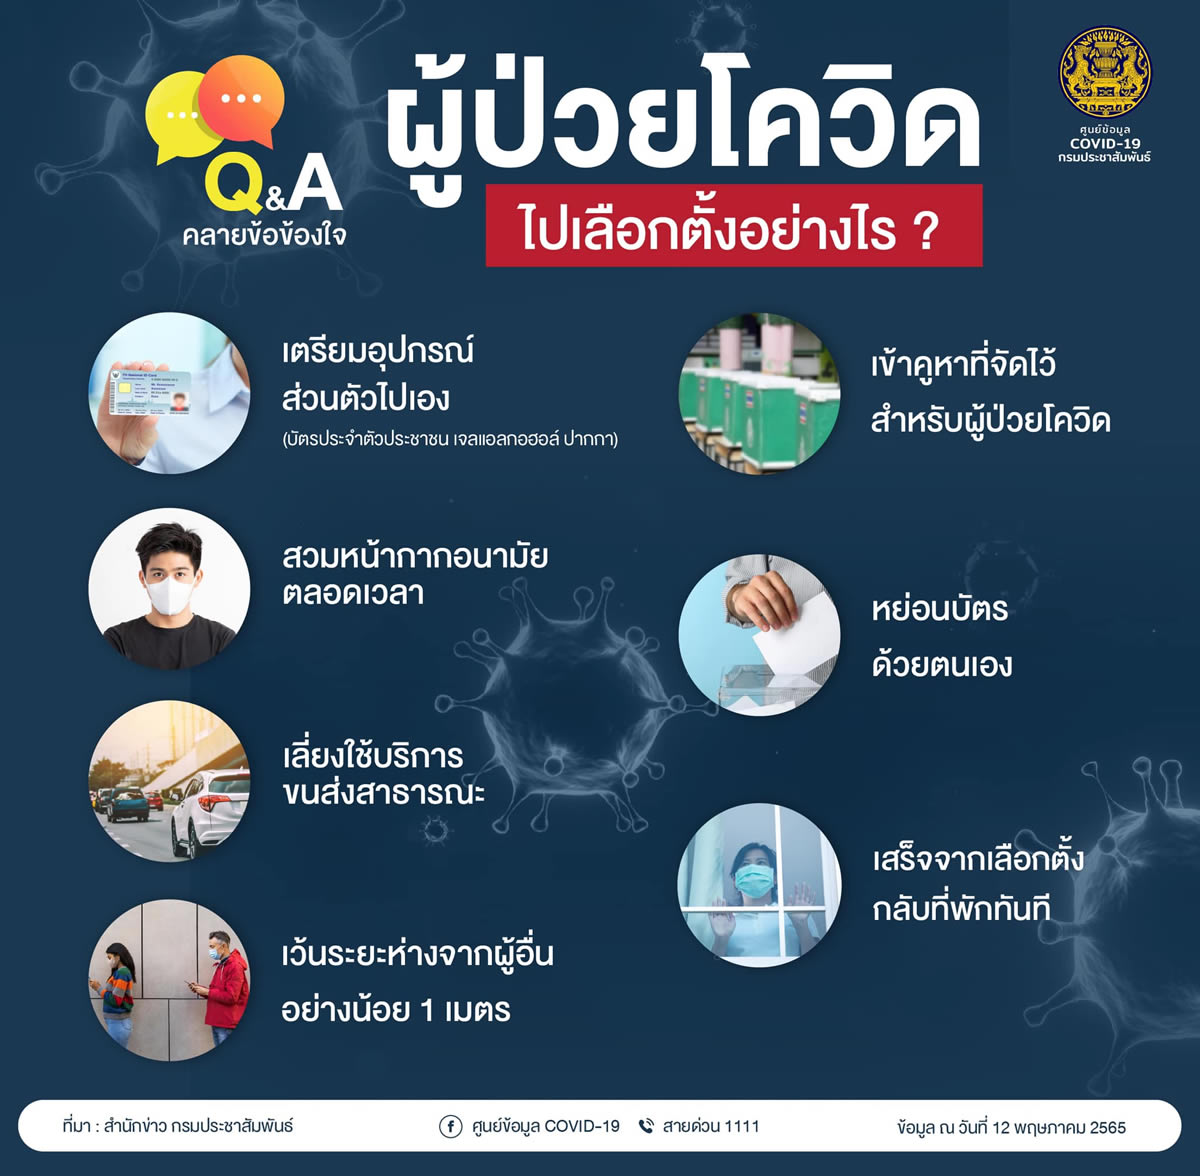 型コロナ感染者も投票可能、5月22日(日)はバンコク都知事選挙の投票日